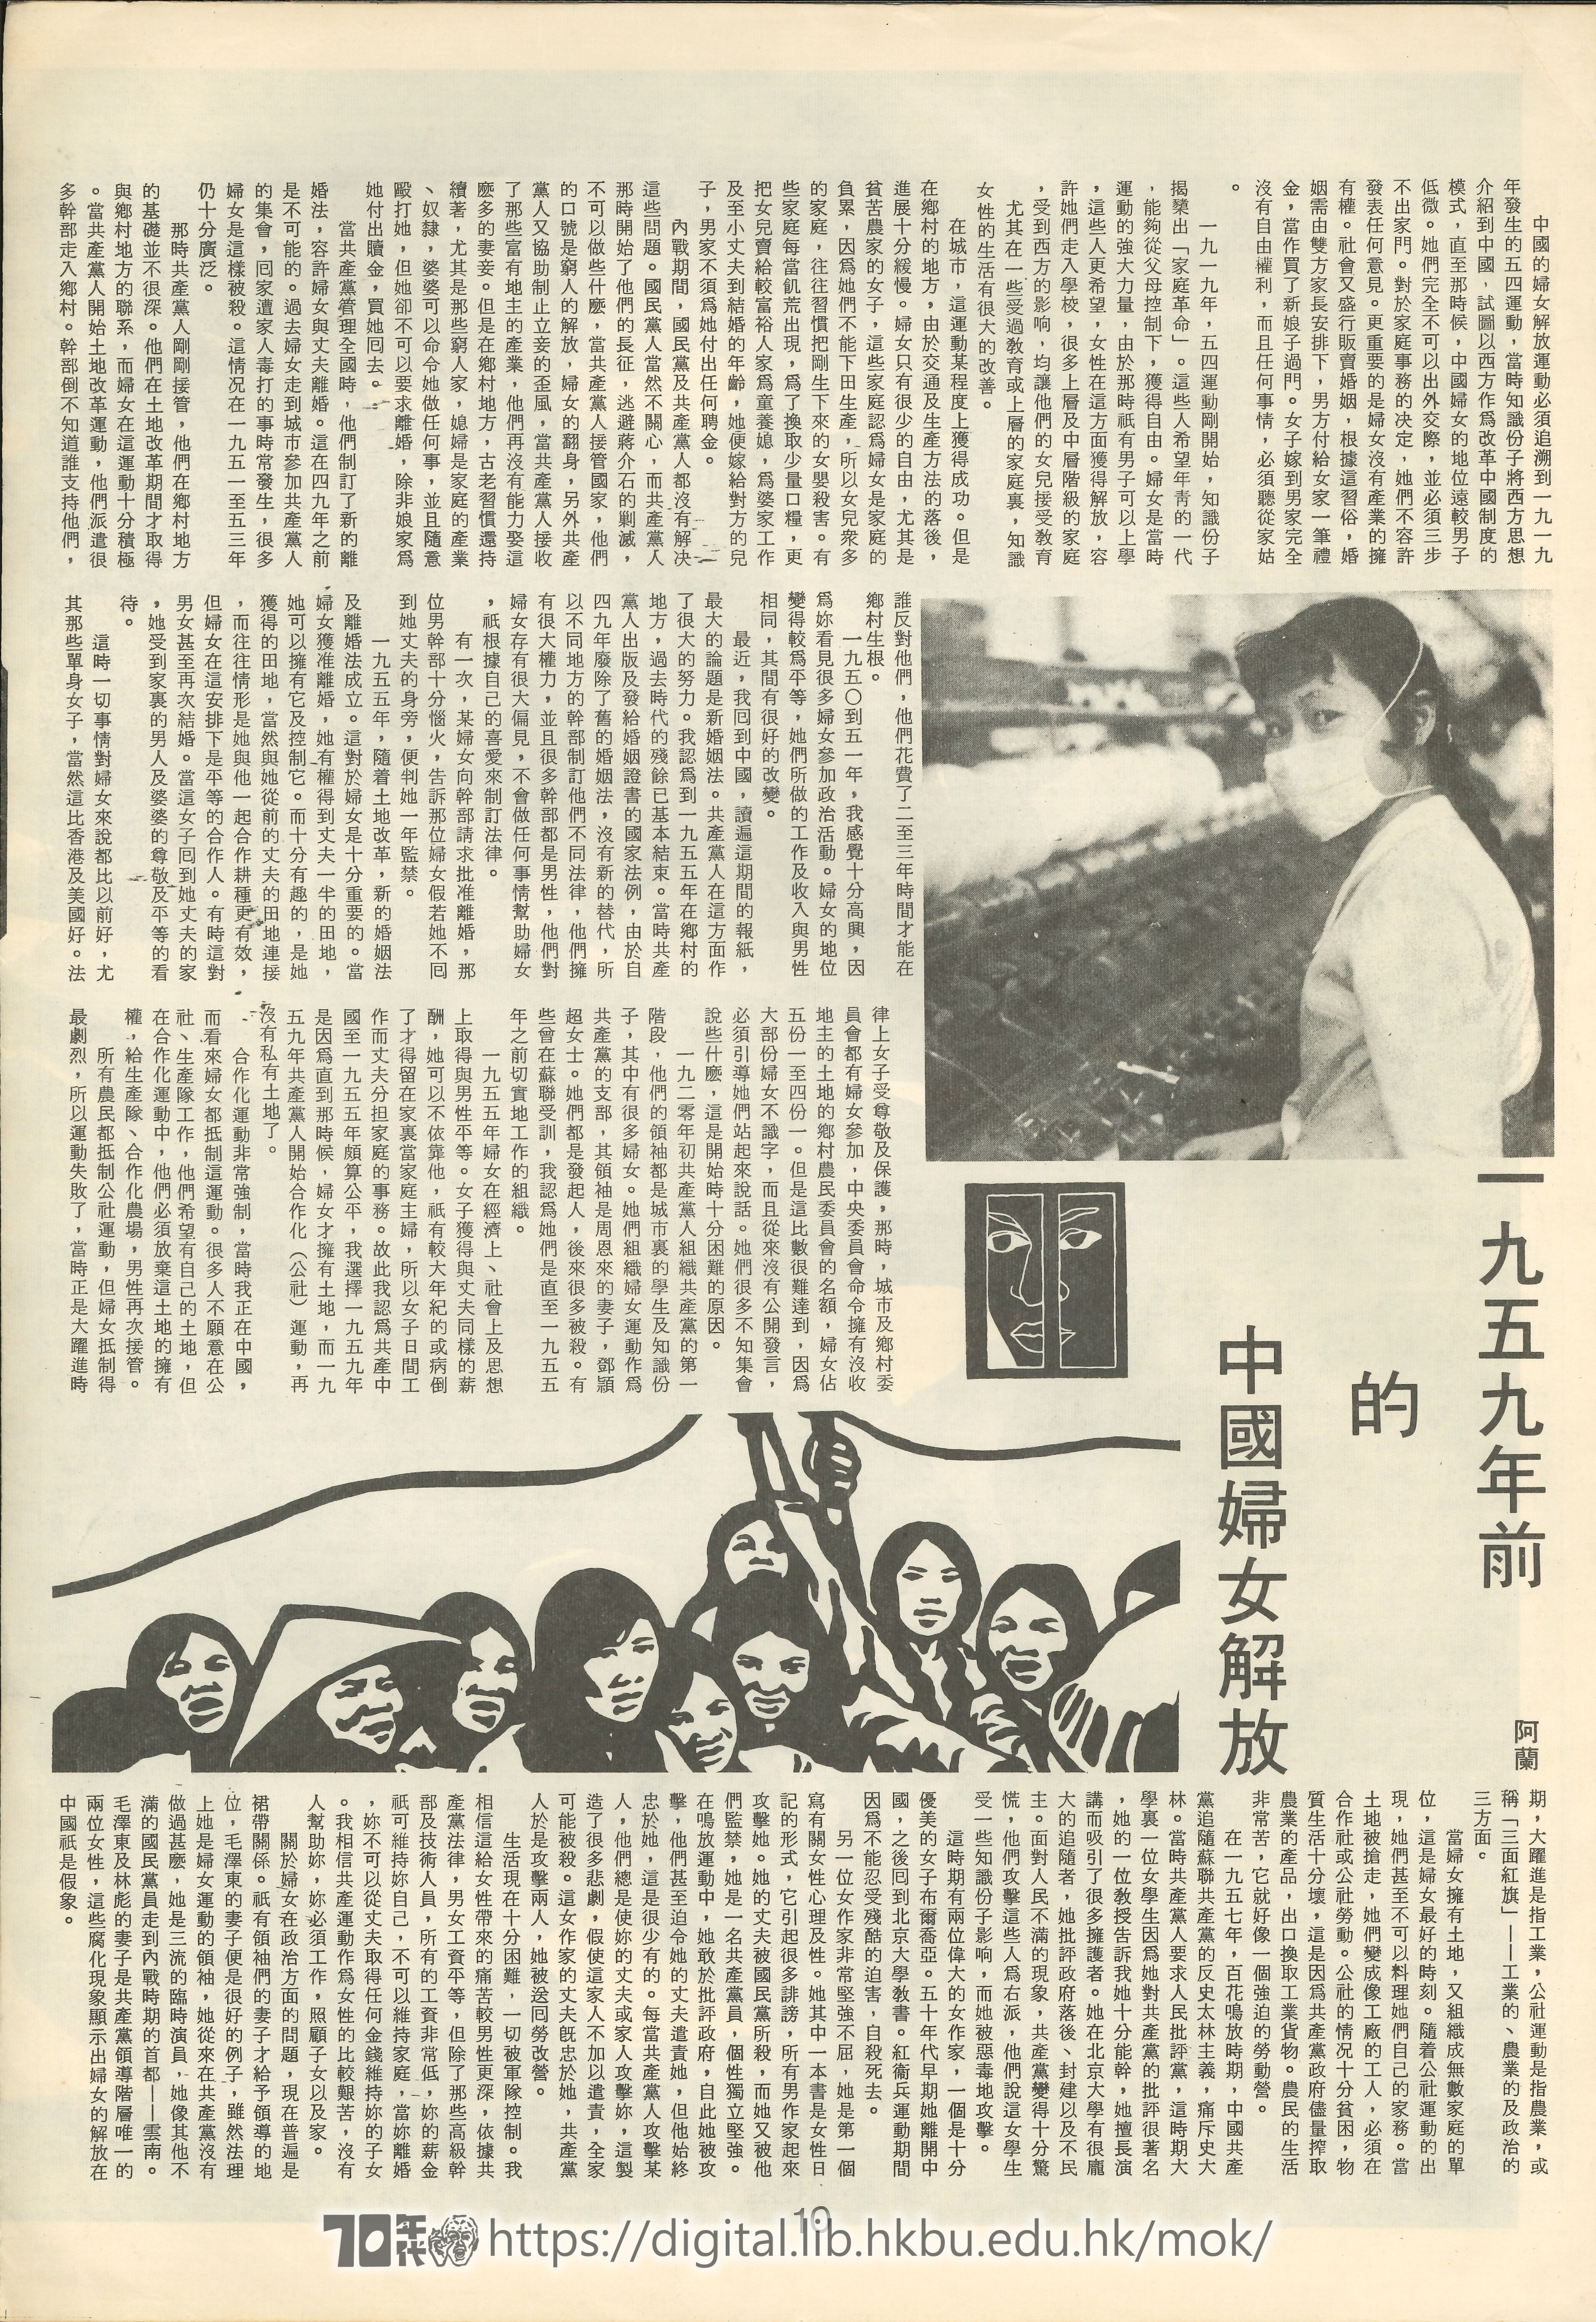  ���������2��� 一九五九年前的中國婦女解放 阿蘭 